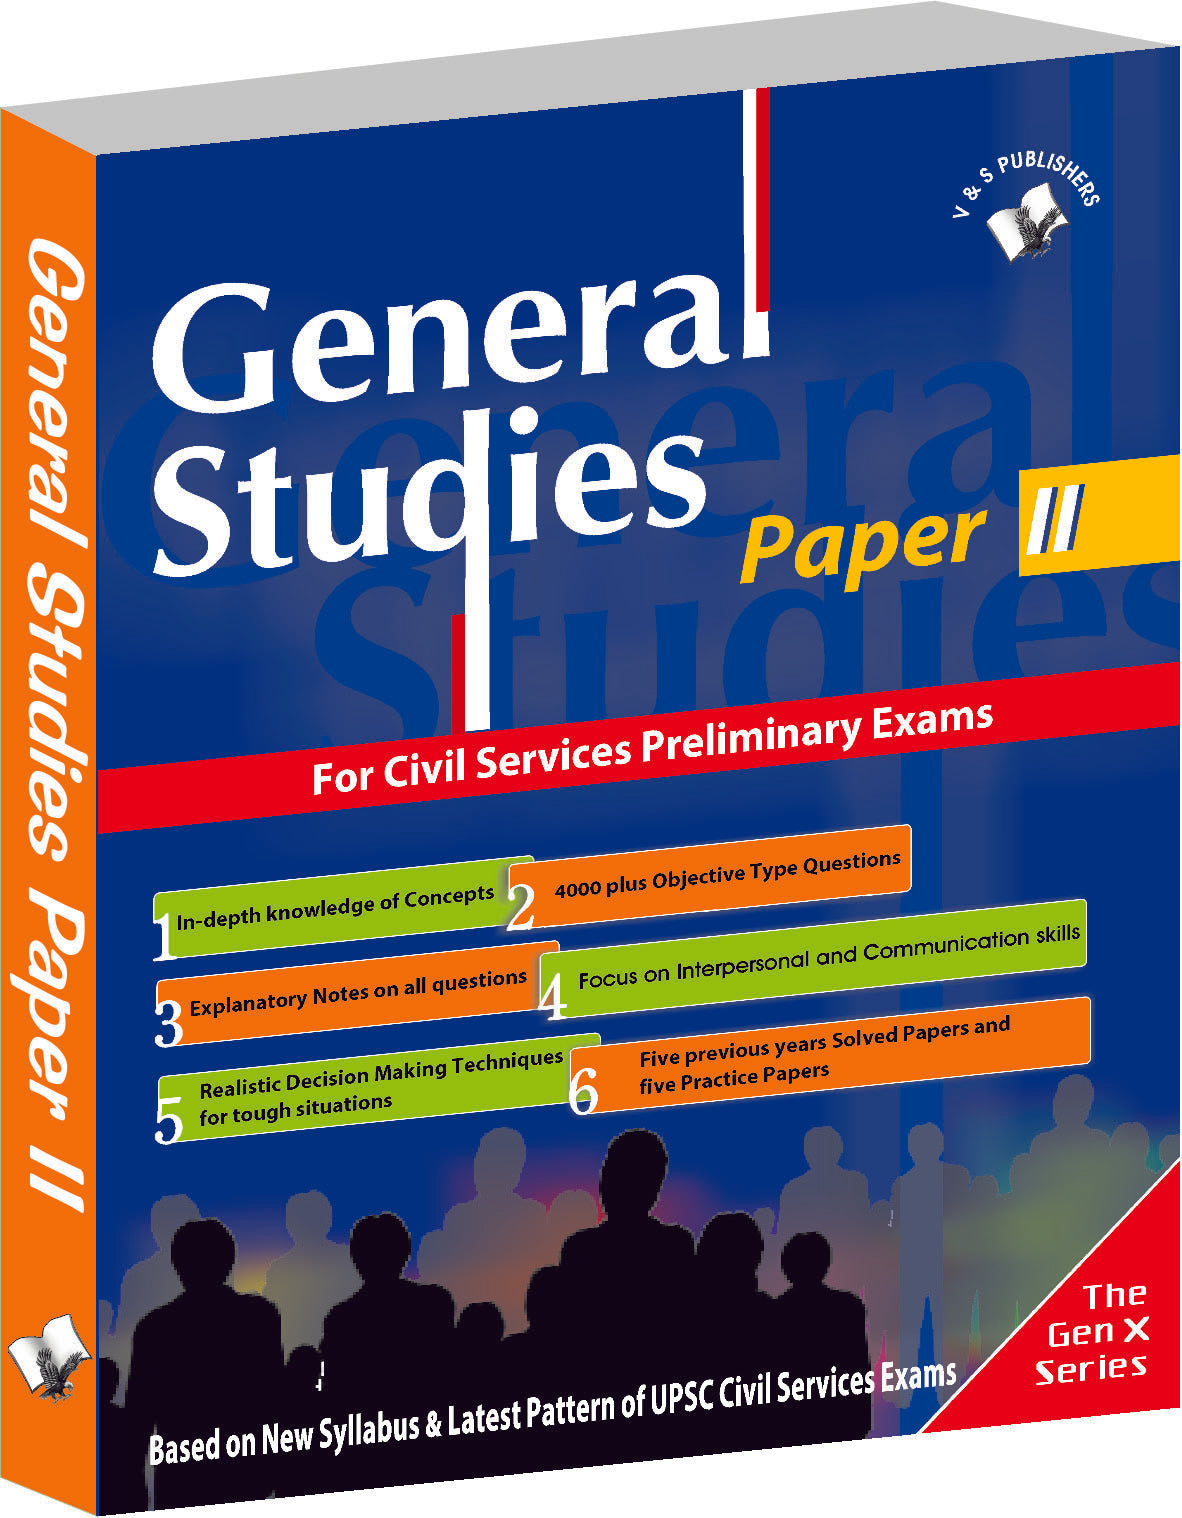 General Studies Paper 2